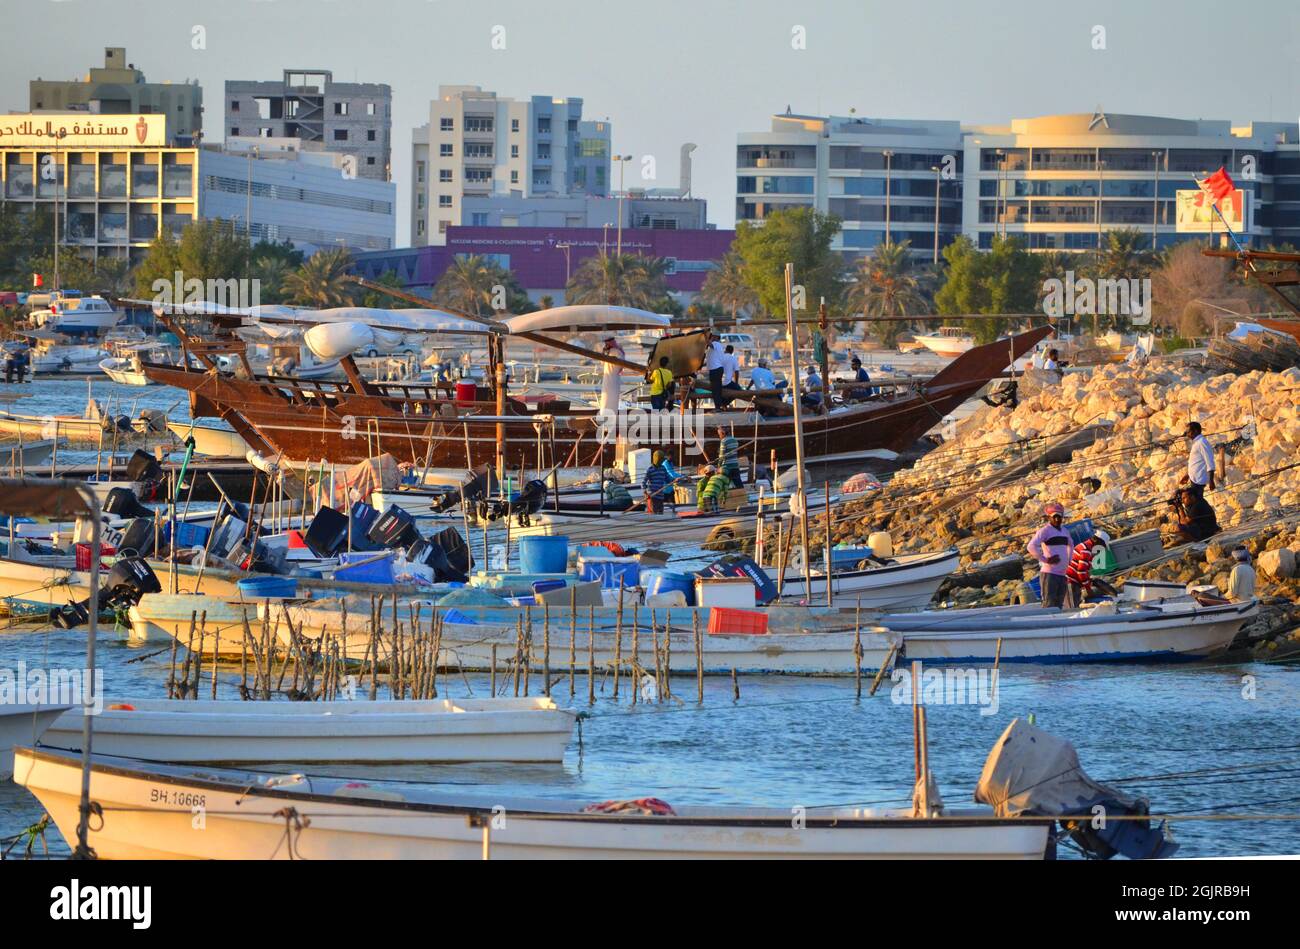 C'est le quai à bateaux dans le parc Al Ghouz ici à Muharraq Bahreïn Banque D'Images